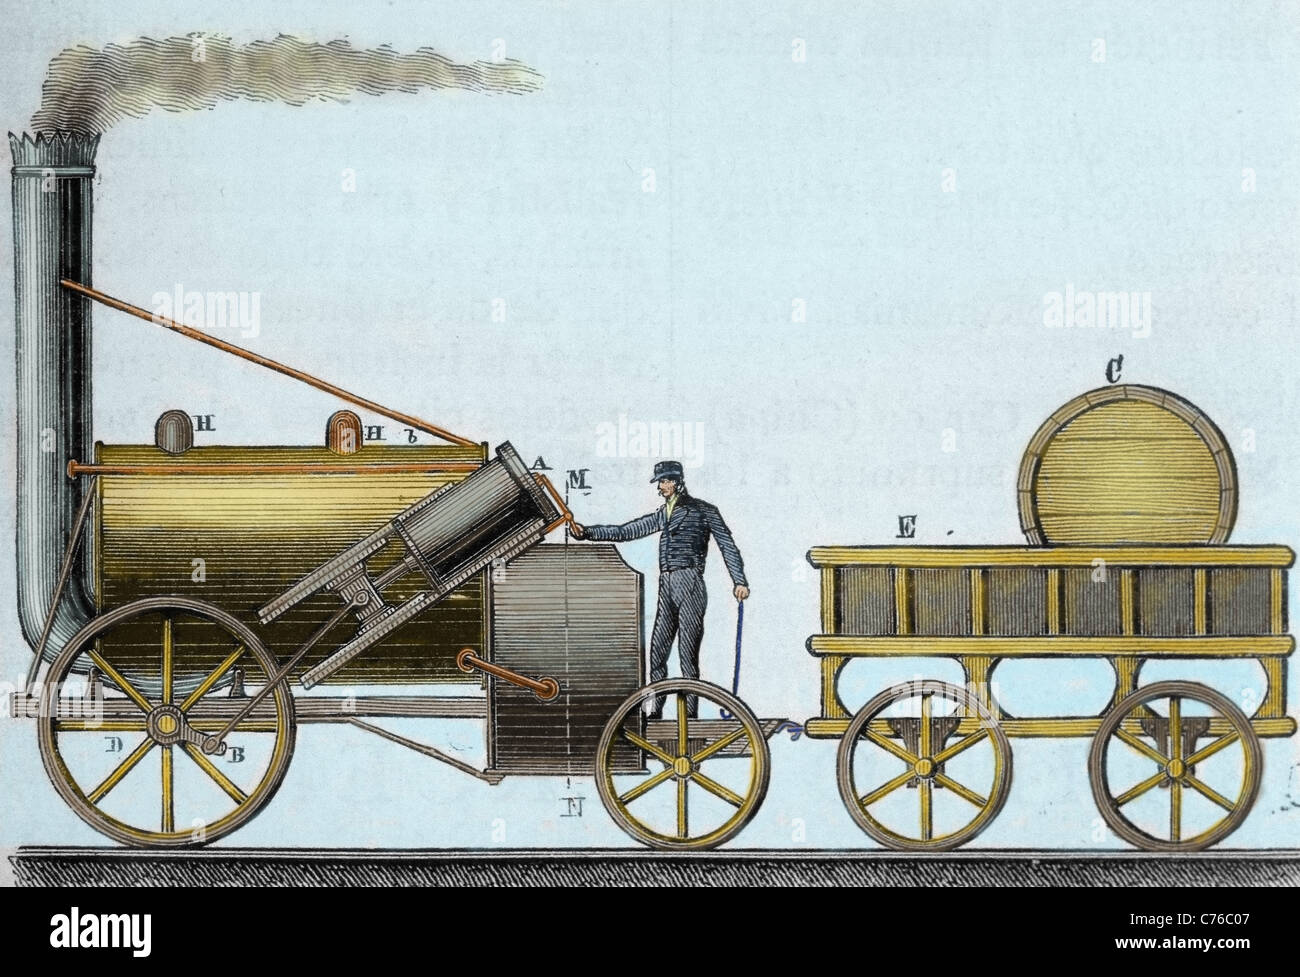 Die Rakete. Lokomotive von britischer Ingenieur und Erfinder George Stephenson (1781-1848) entworfen. Farbige Gravur. Stockfoto